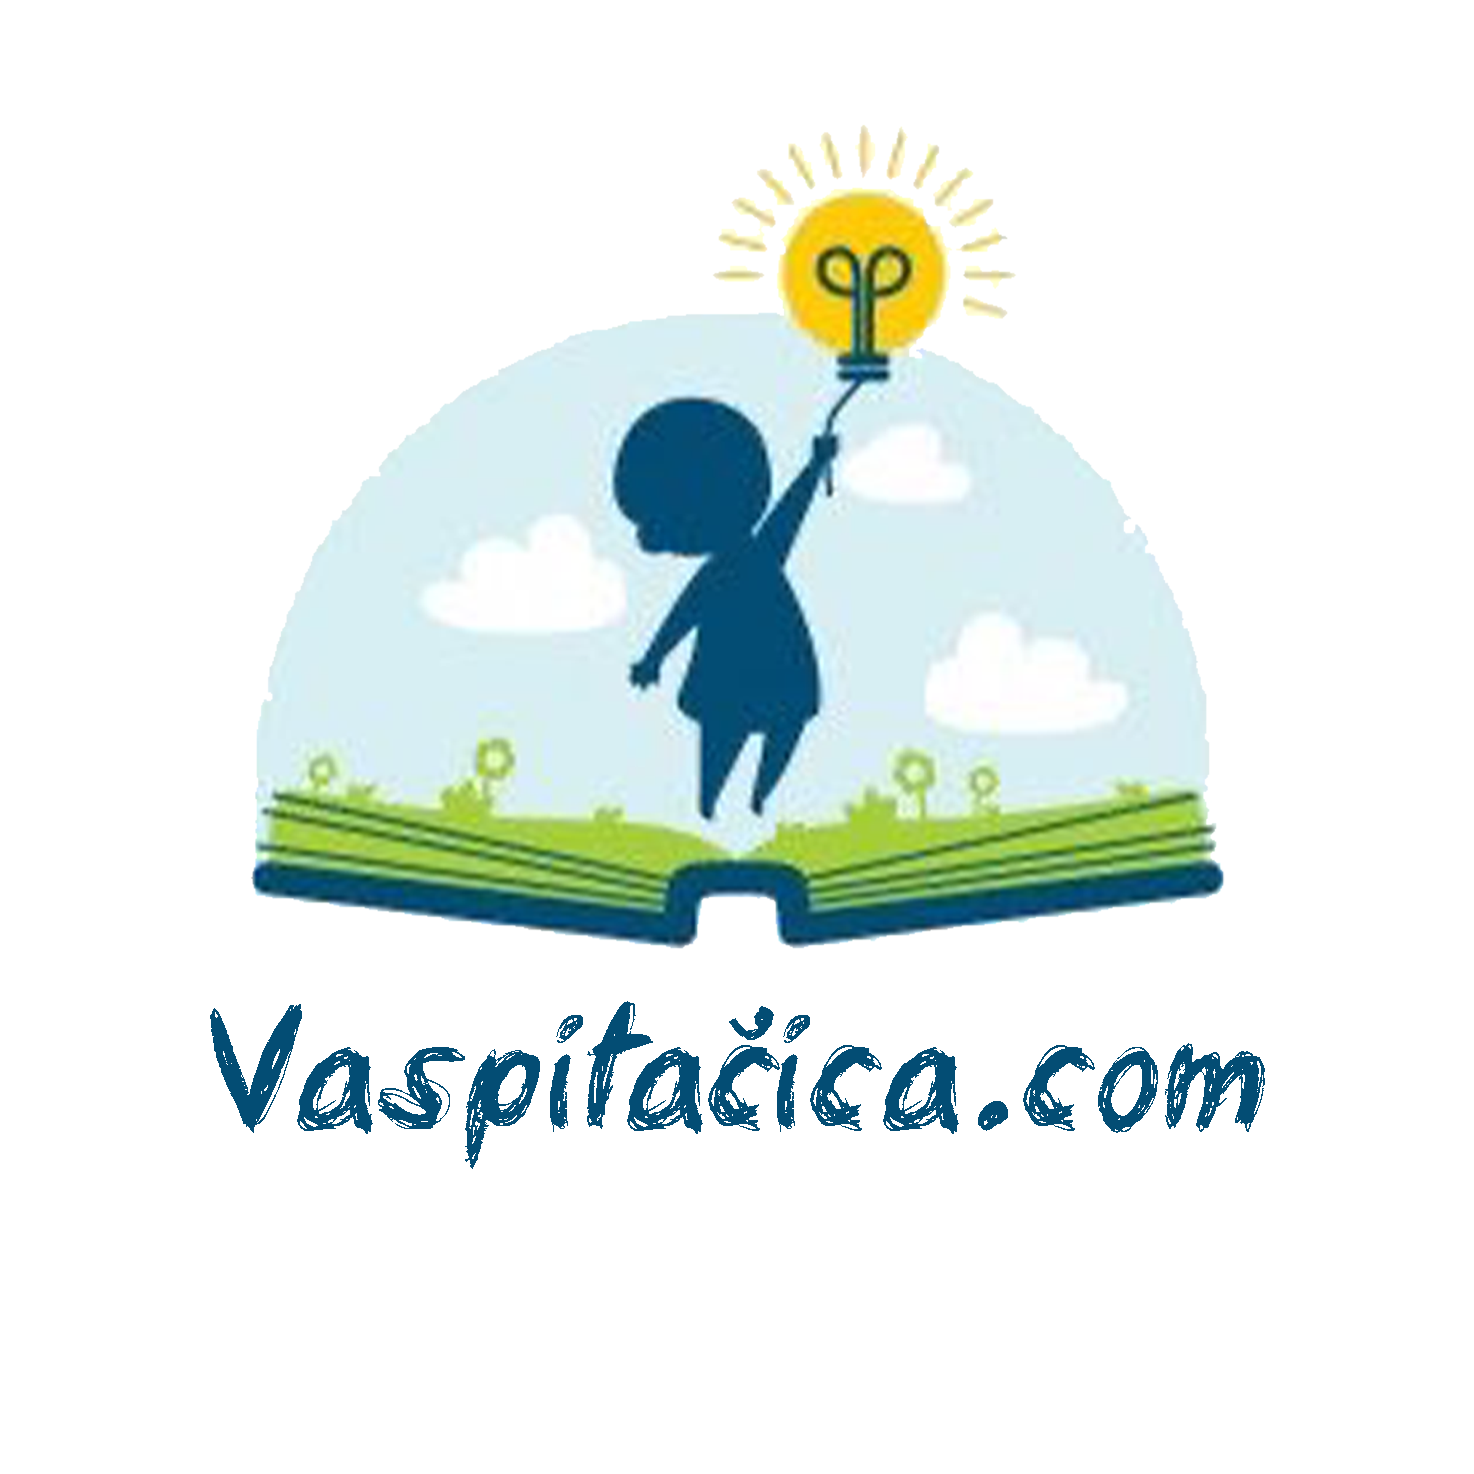 vaspitacica.com logo small